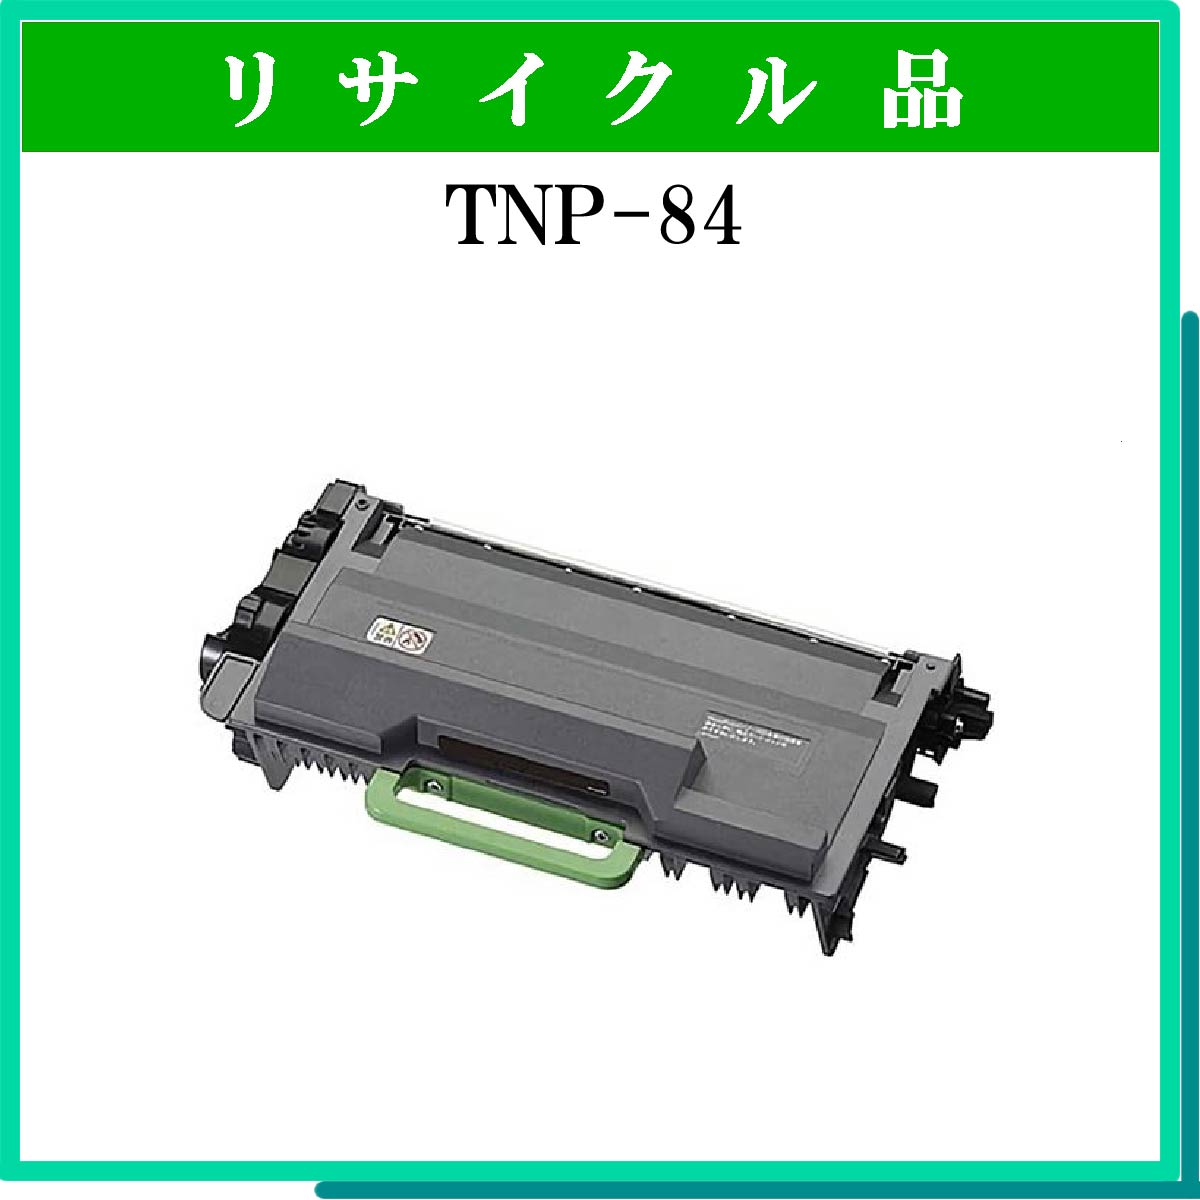 TNP-84